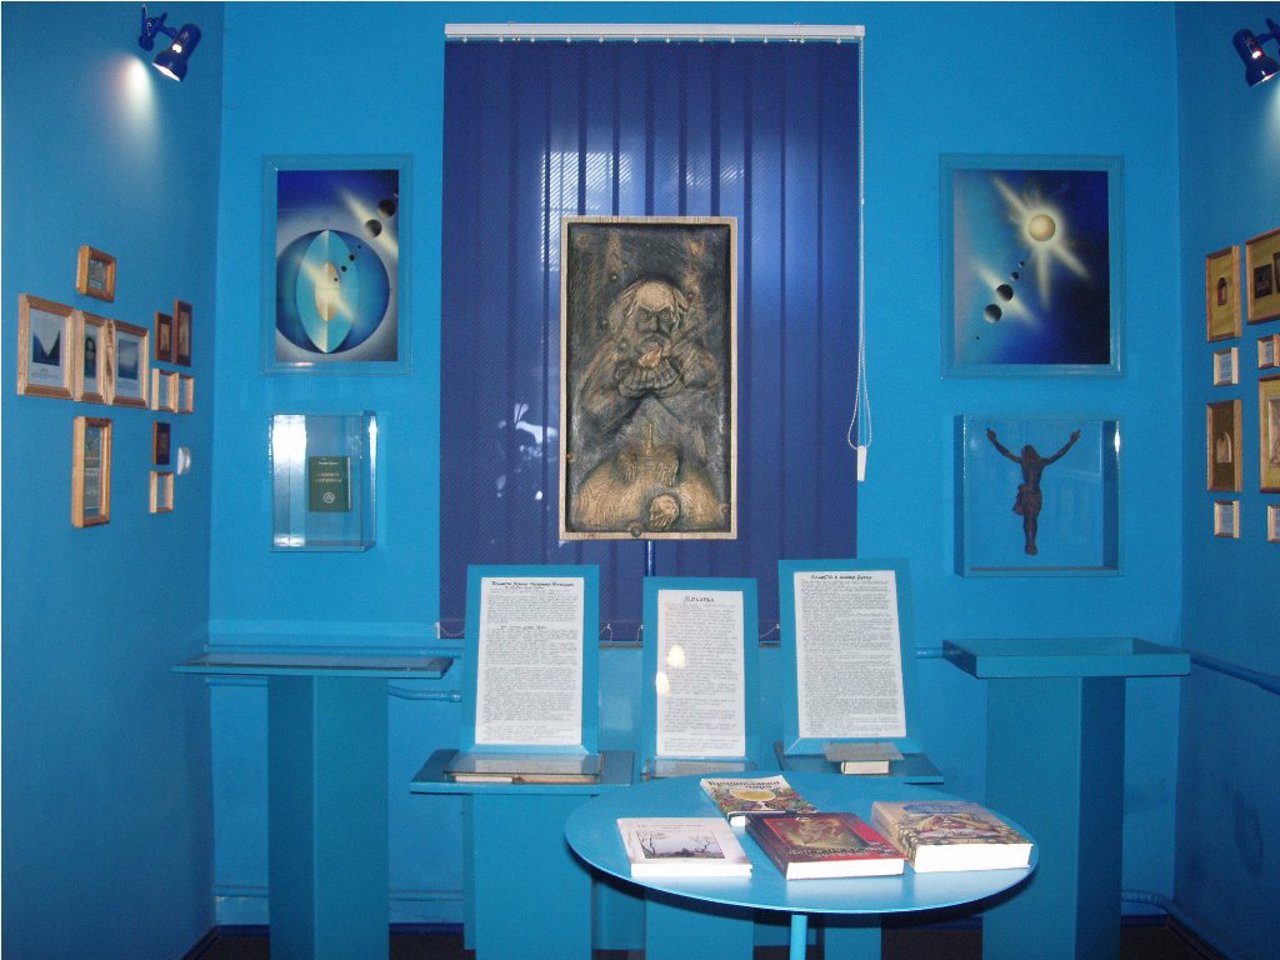 Art Museum "uman. Earth. Universe", Sokal